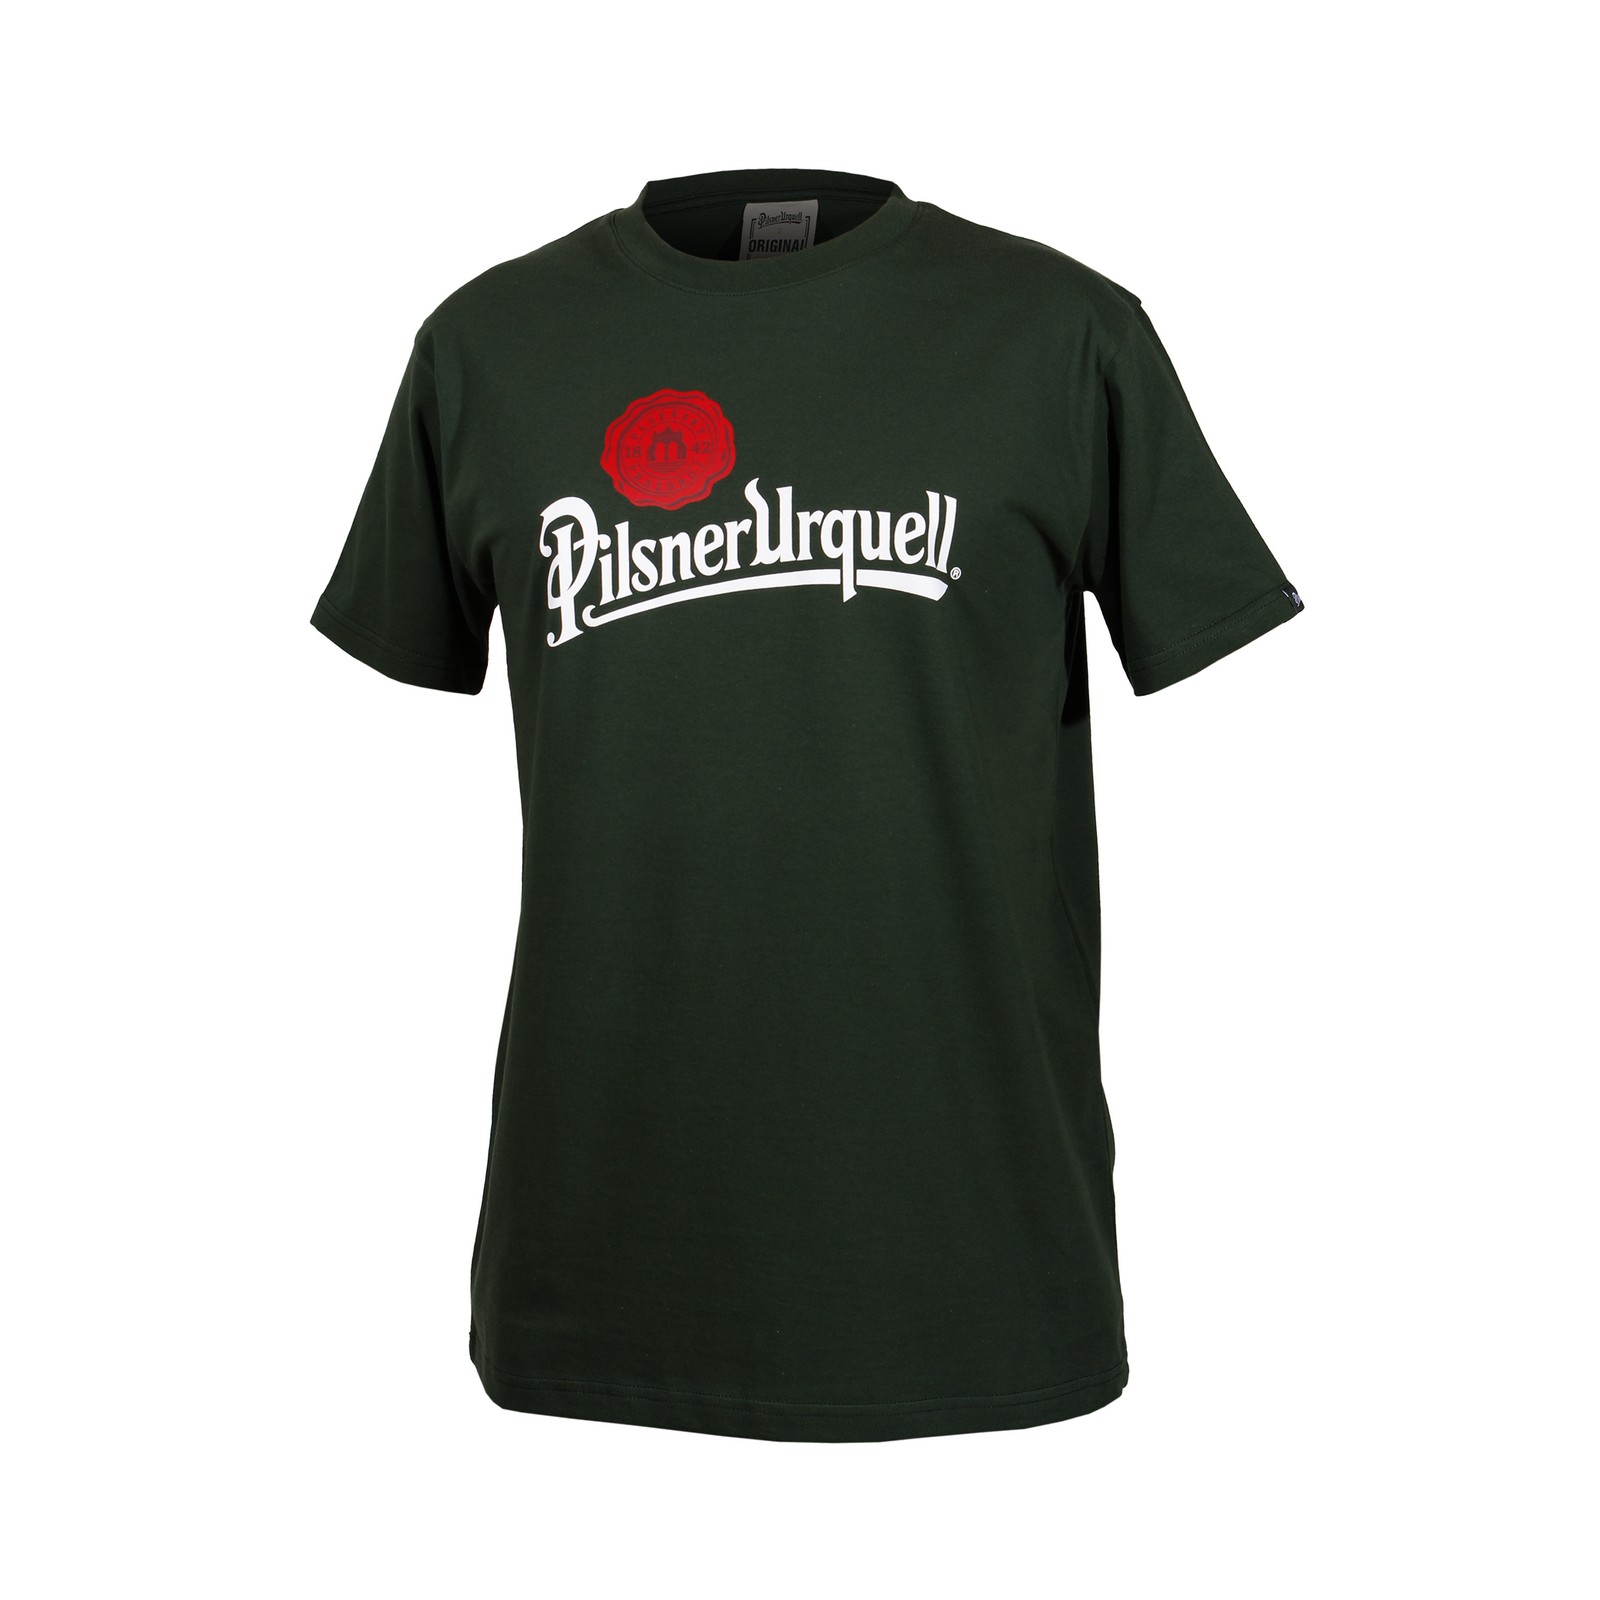 Men's T-shirt Pilsner Urquell logo with seal green